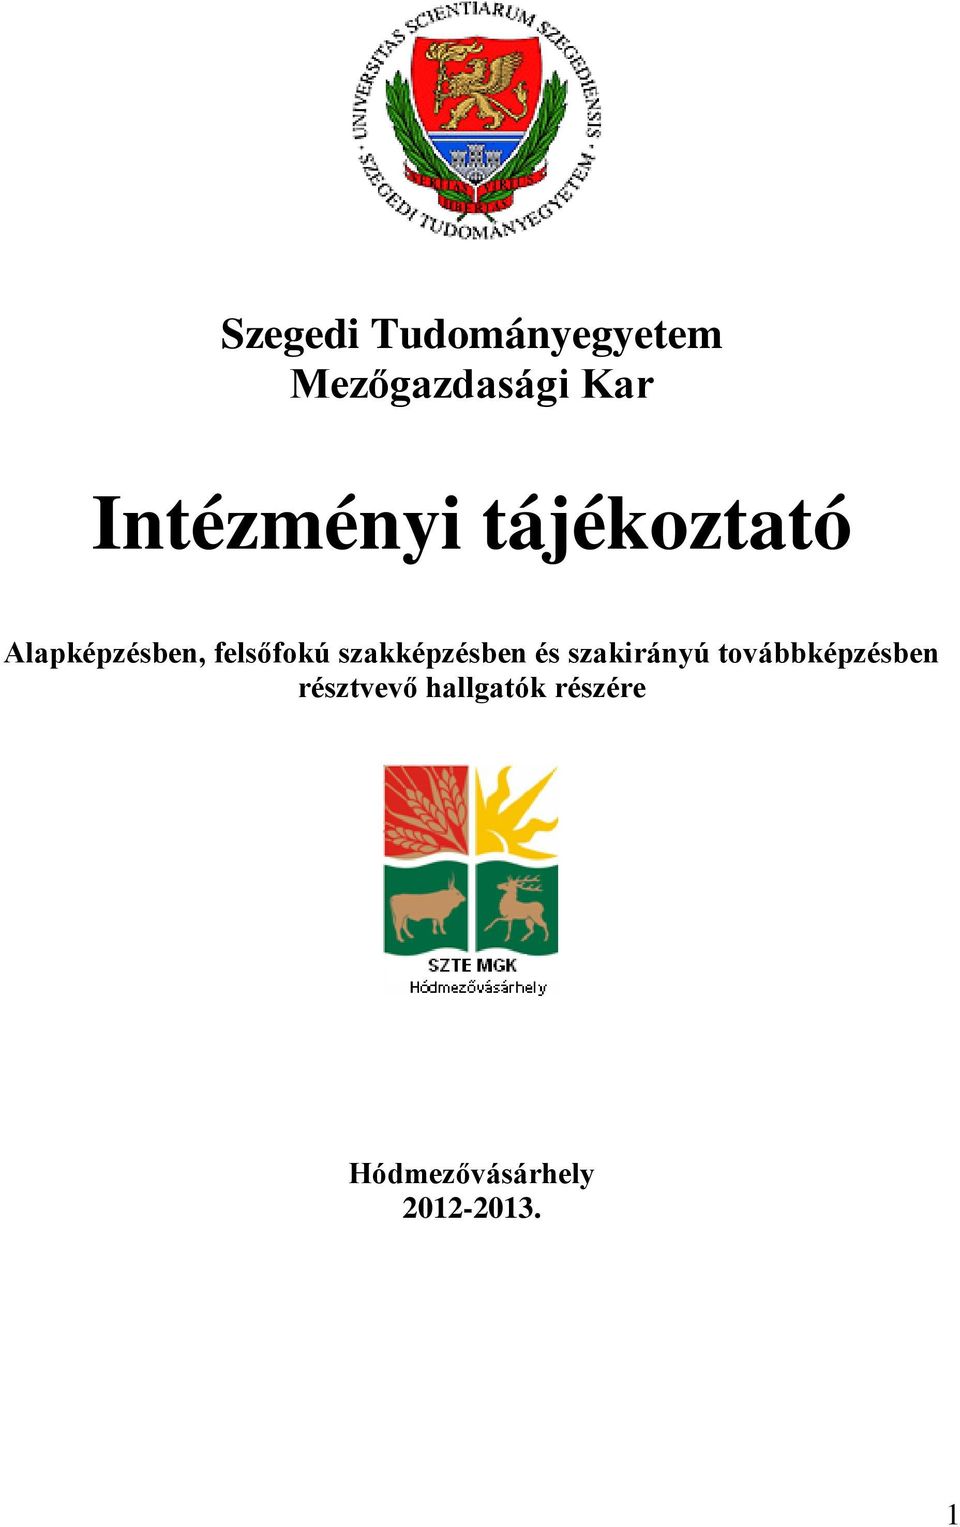 Intézményi tájékoztató - PDF Ingyenes letöltés